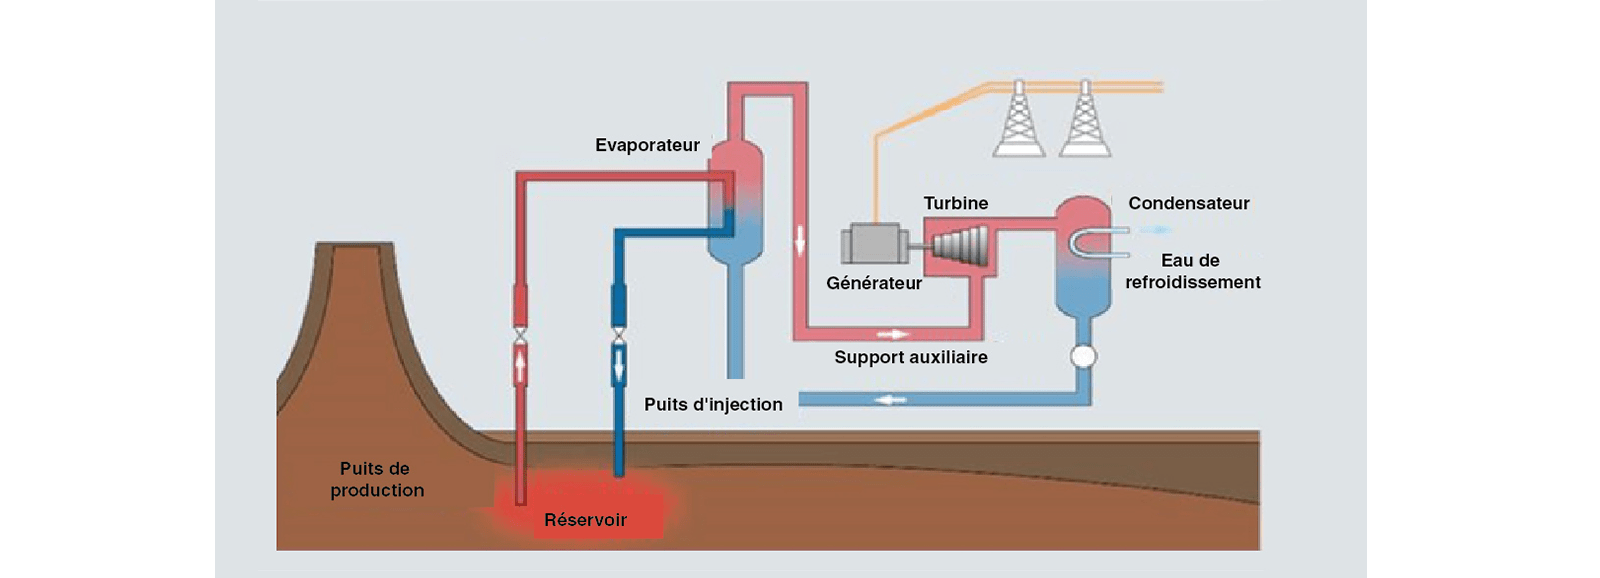 centrale geothermique systeme de cycle binaire schema